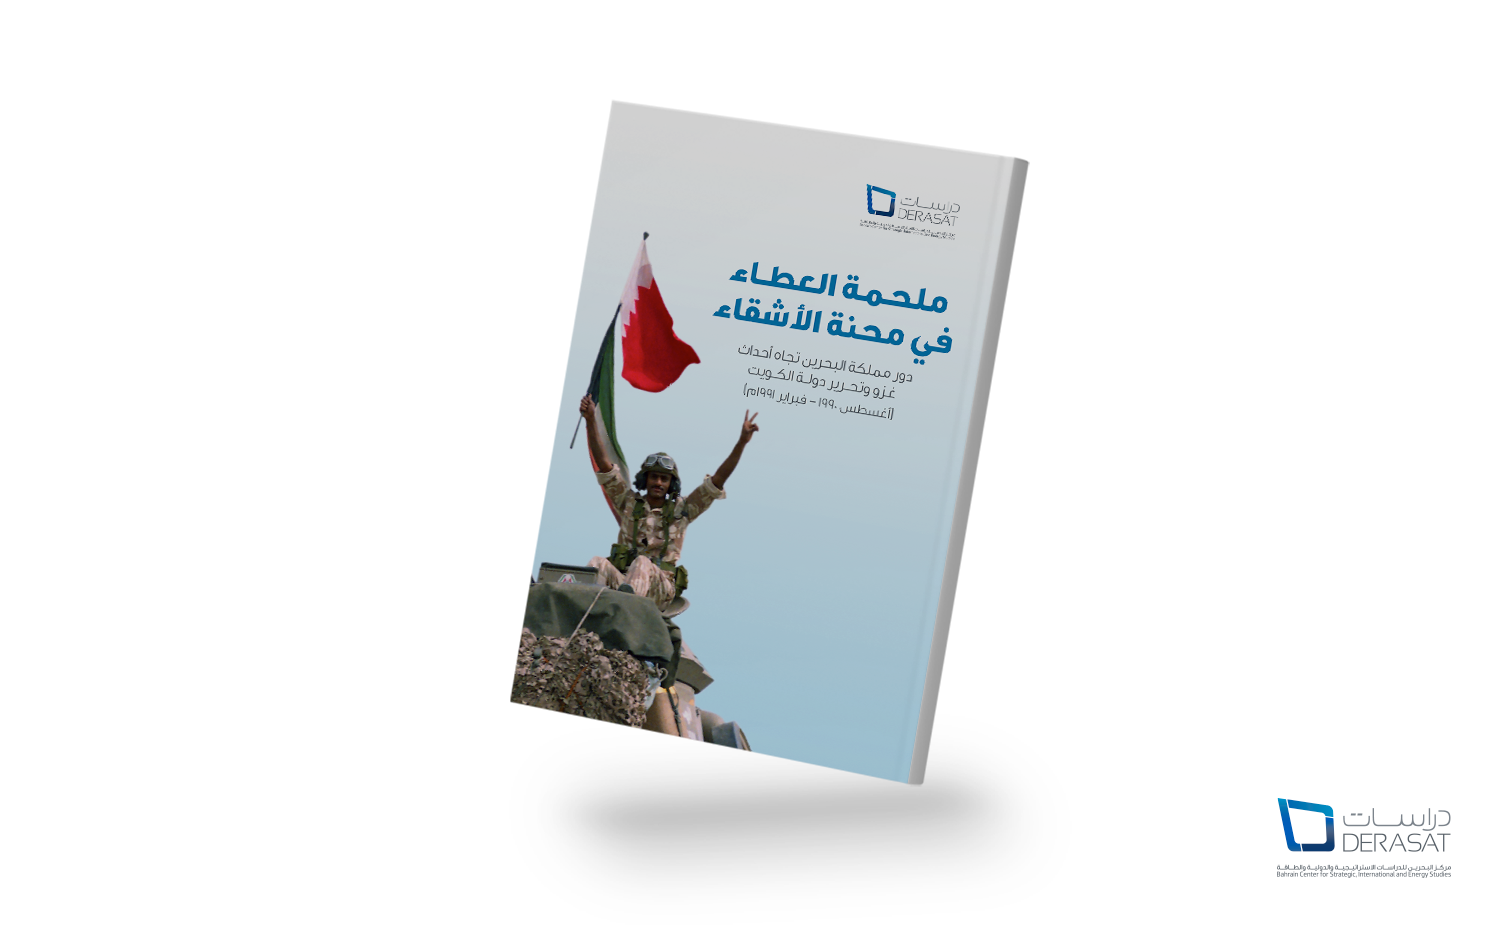 ملحمة العطاء في محنة الأشقاء: دور مملكة البحرين تجاه أحداث غزو وتحرير دولة الكويت (أغسطس 1990 – فبراير 1991م)